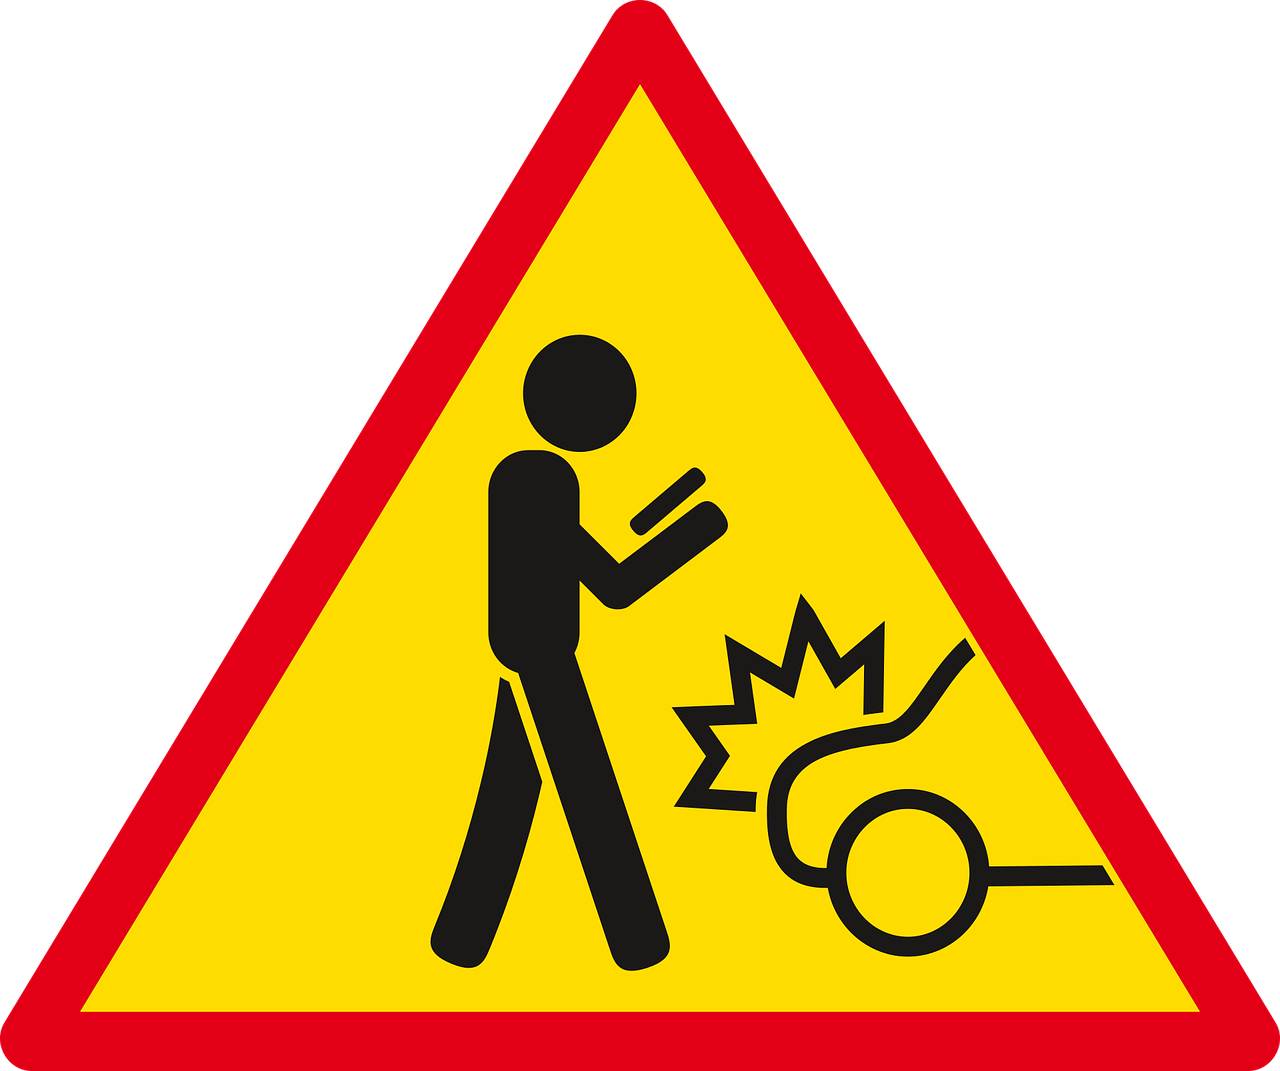 Distracted Walking Warning Sign PNG image